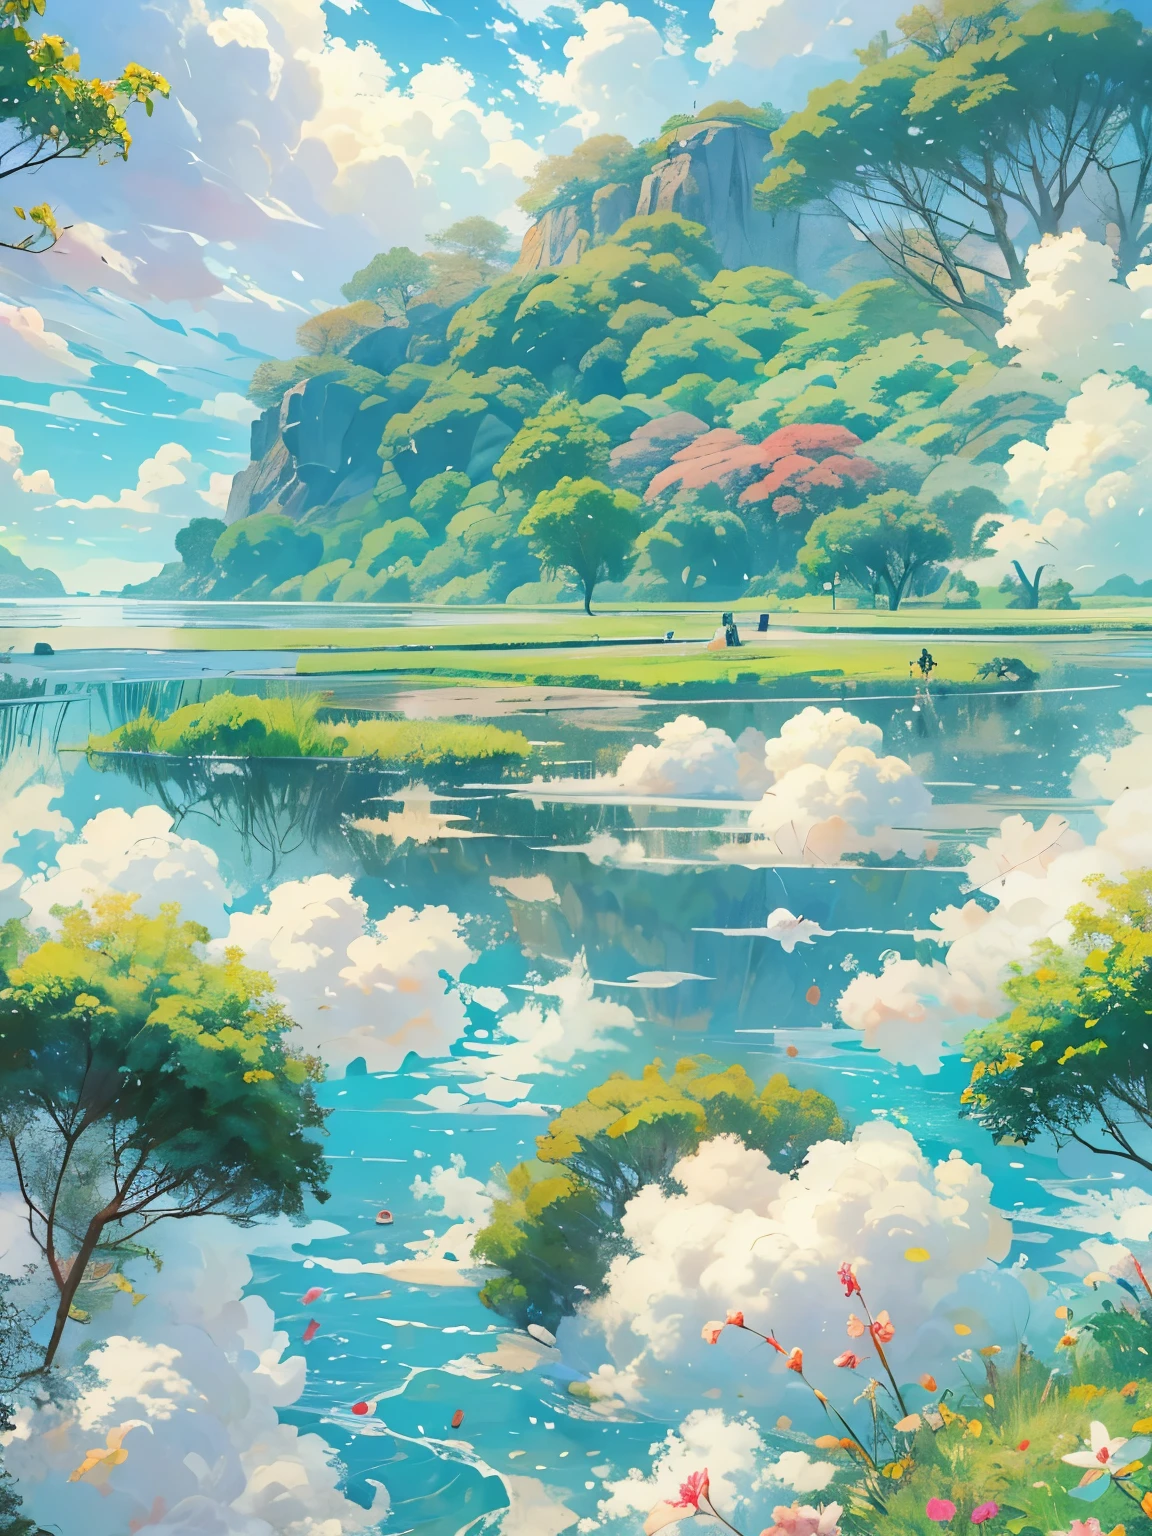 réaliste, authentique, belle et étonnante peinture à l&#39;huile de paysage Studio Ghibli Hayao Miyazaki;Prairie de pétales avec ciel bleu et nuages blancs